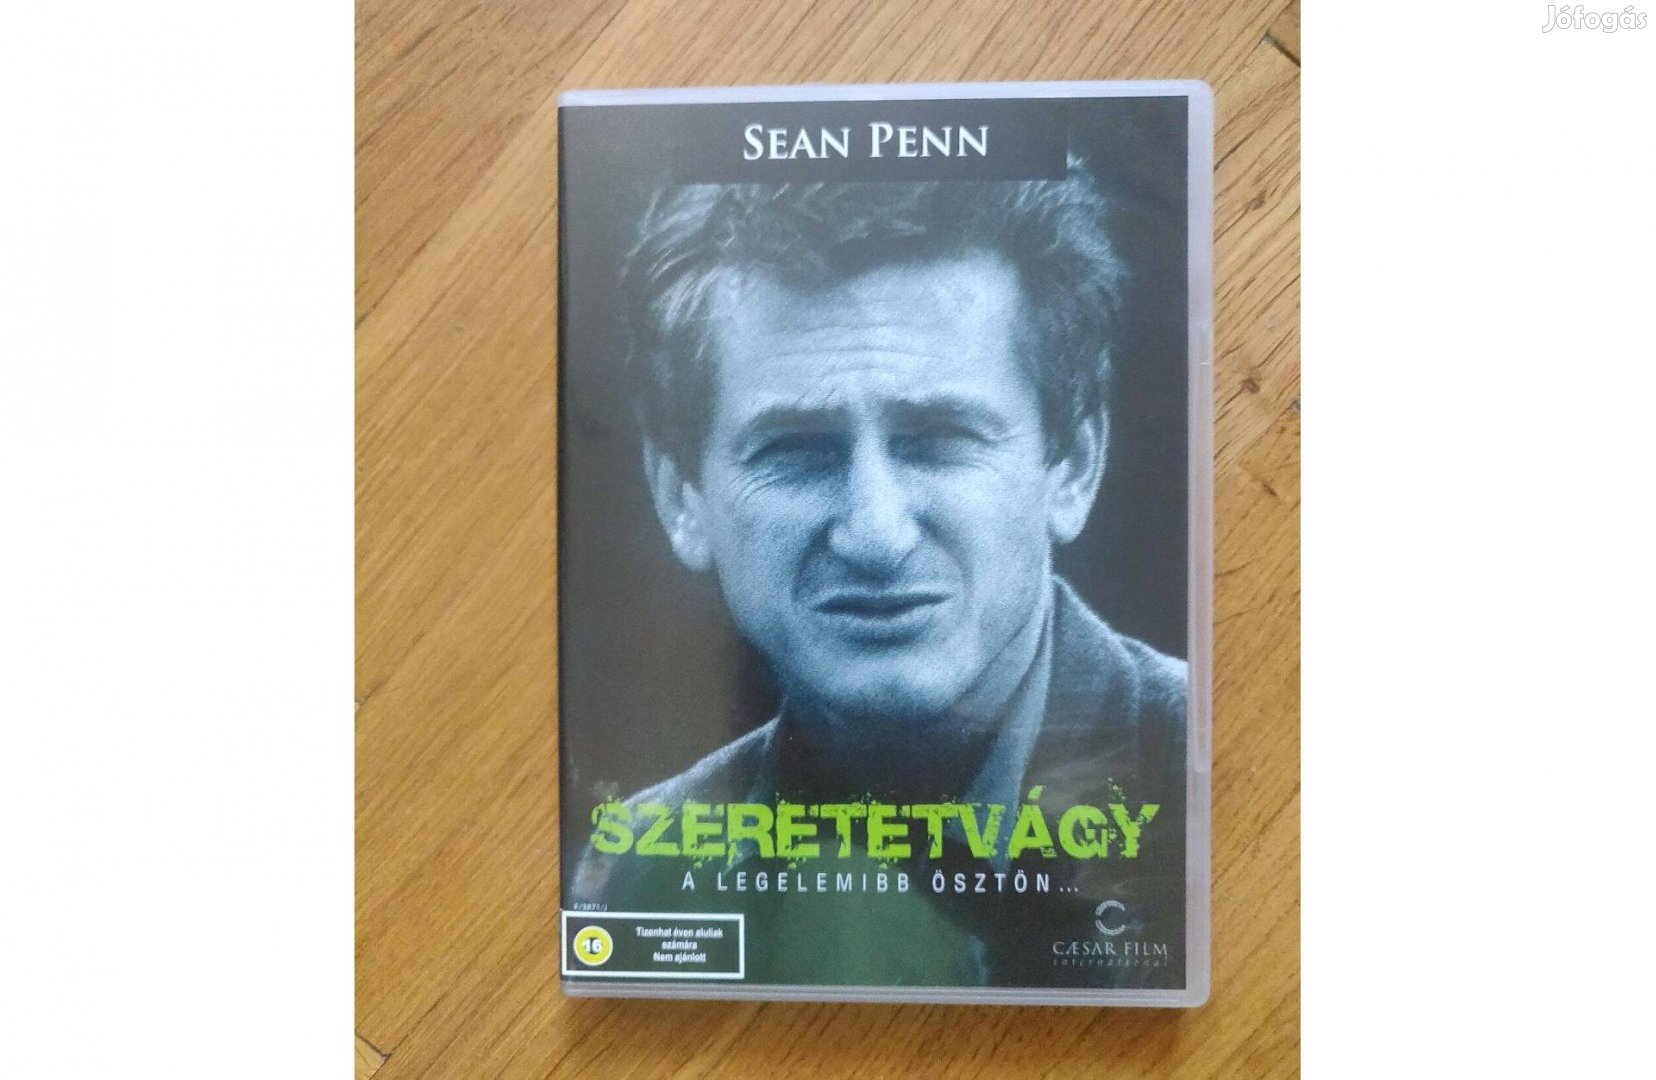 Szeretetvágy filmdráma dvd eladó - Sean Penn